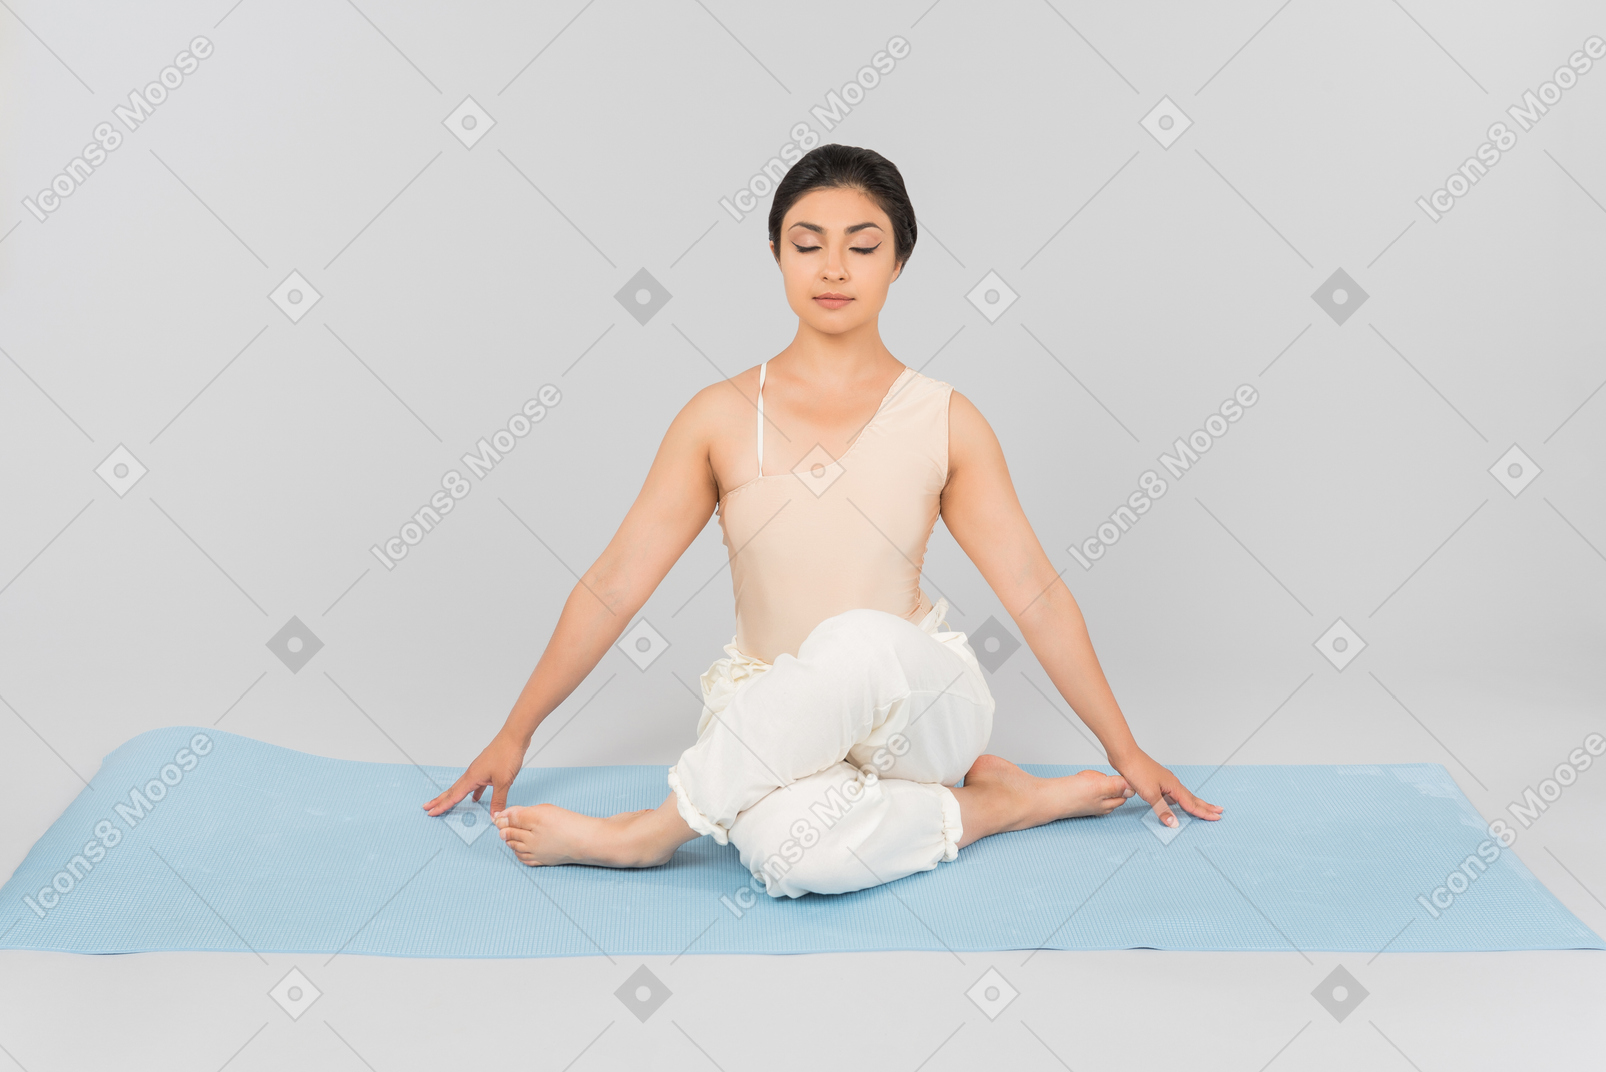 Jeune femme indienne assise sur un tapis de yoga avec les jambes croisées et les yeux fermés